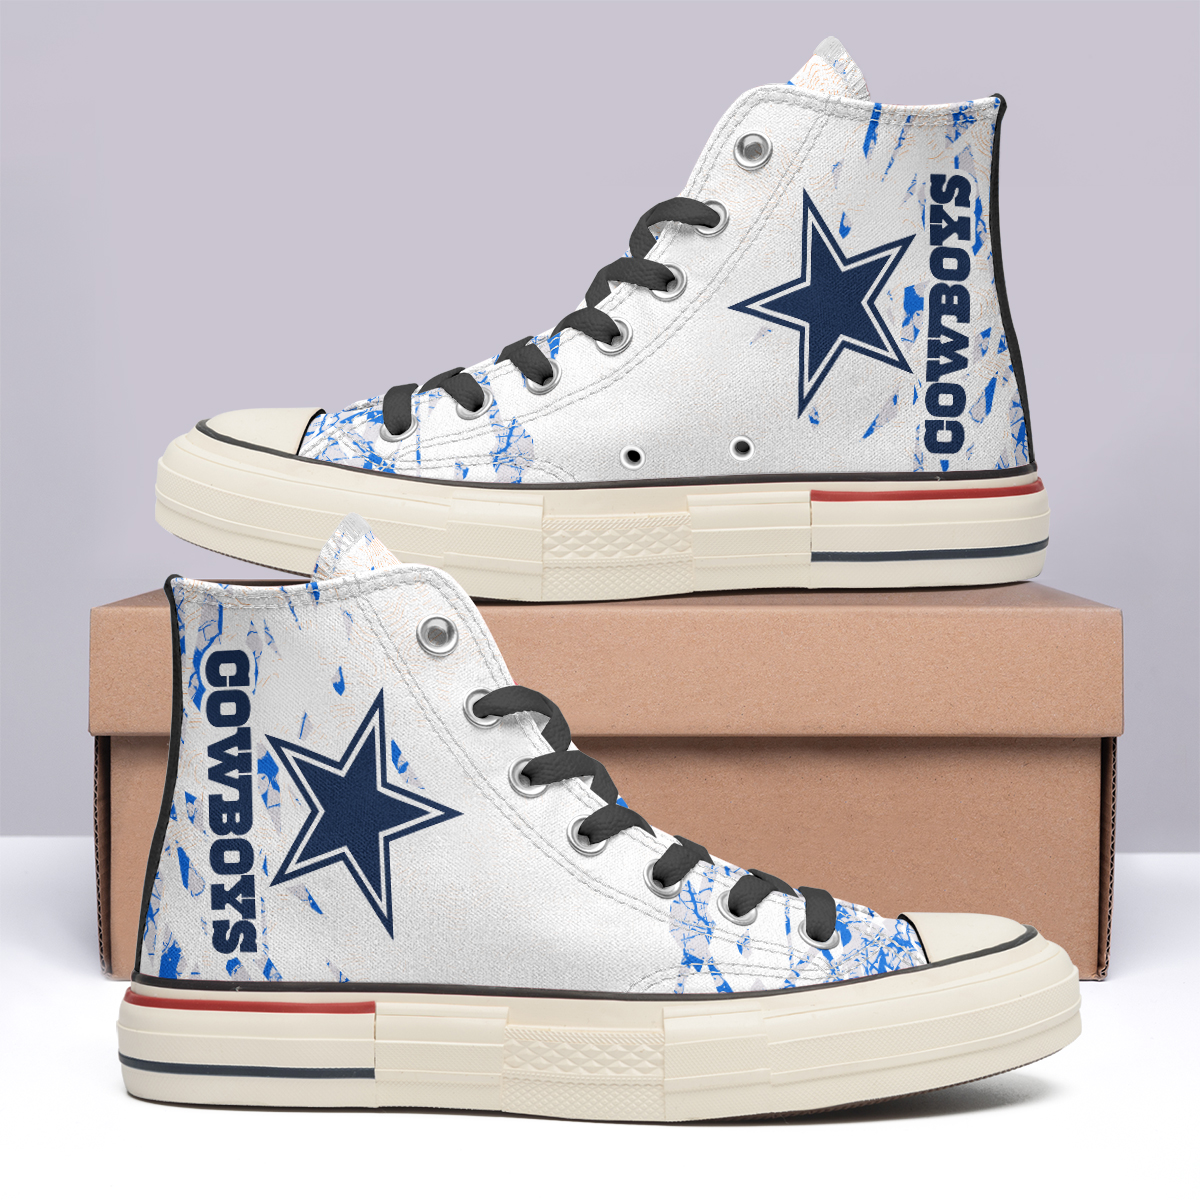 Dallas Cowboys High Top Canvas Shoes Special Edition